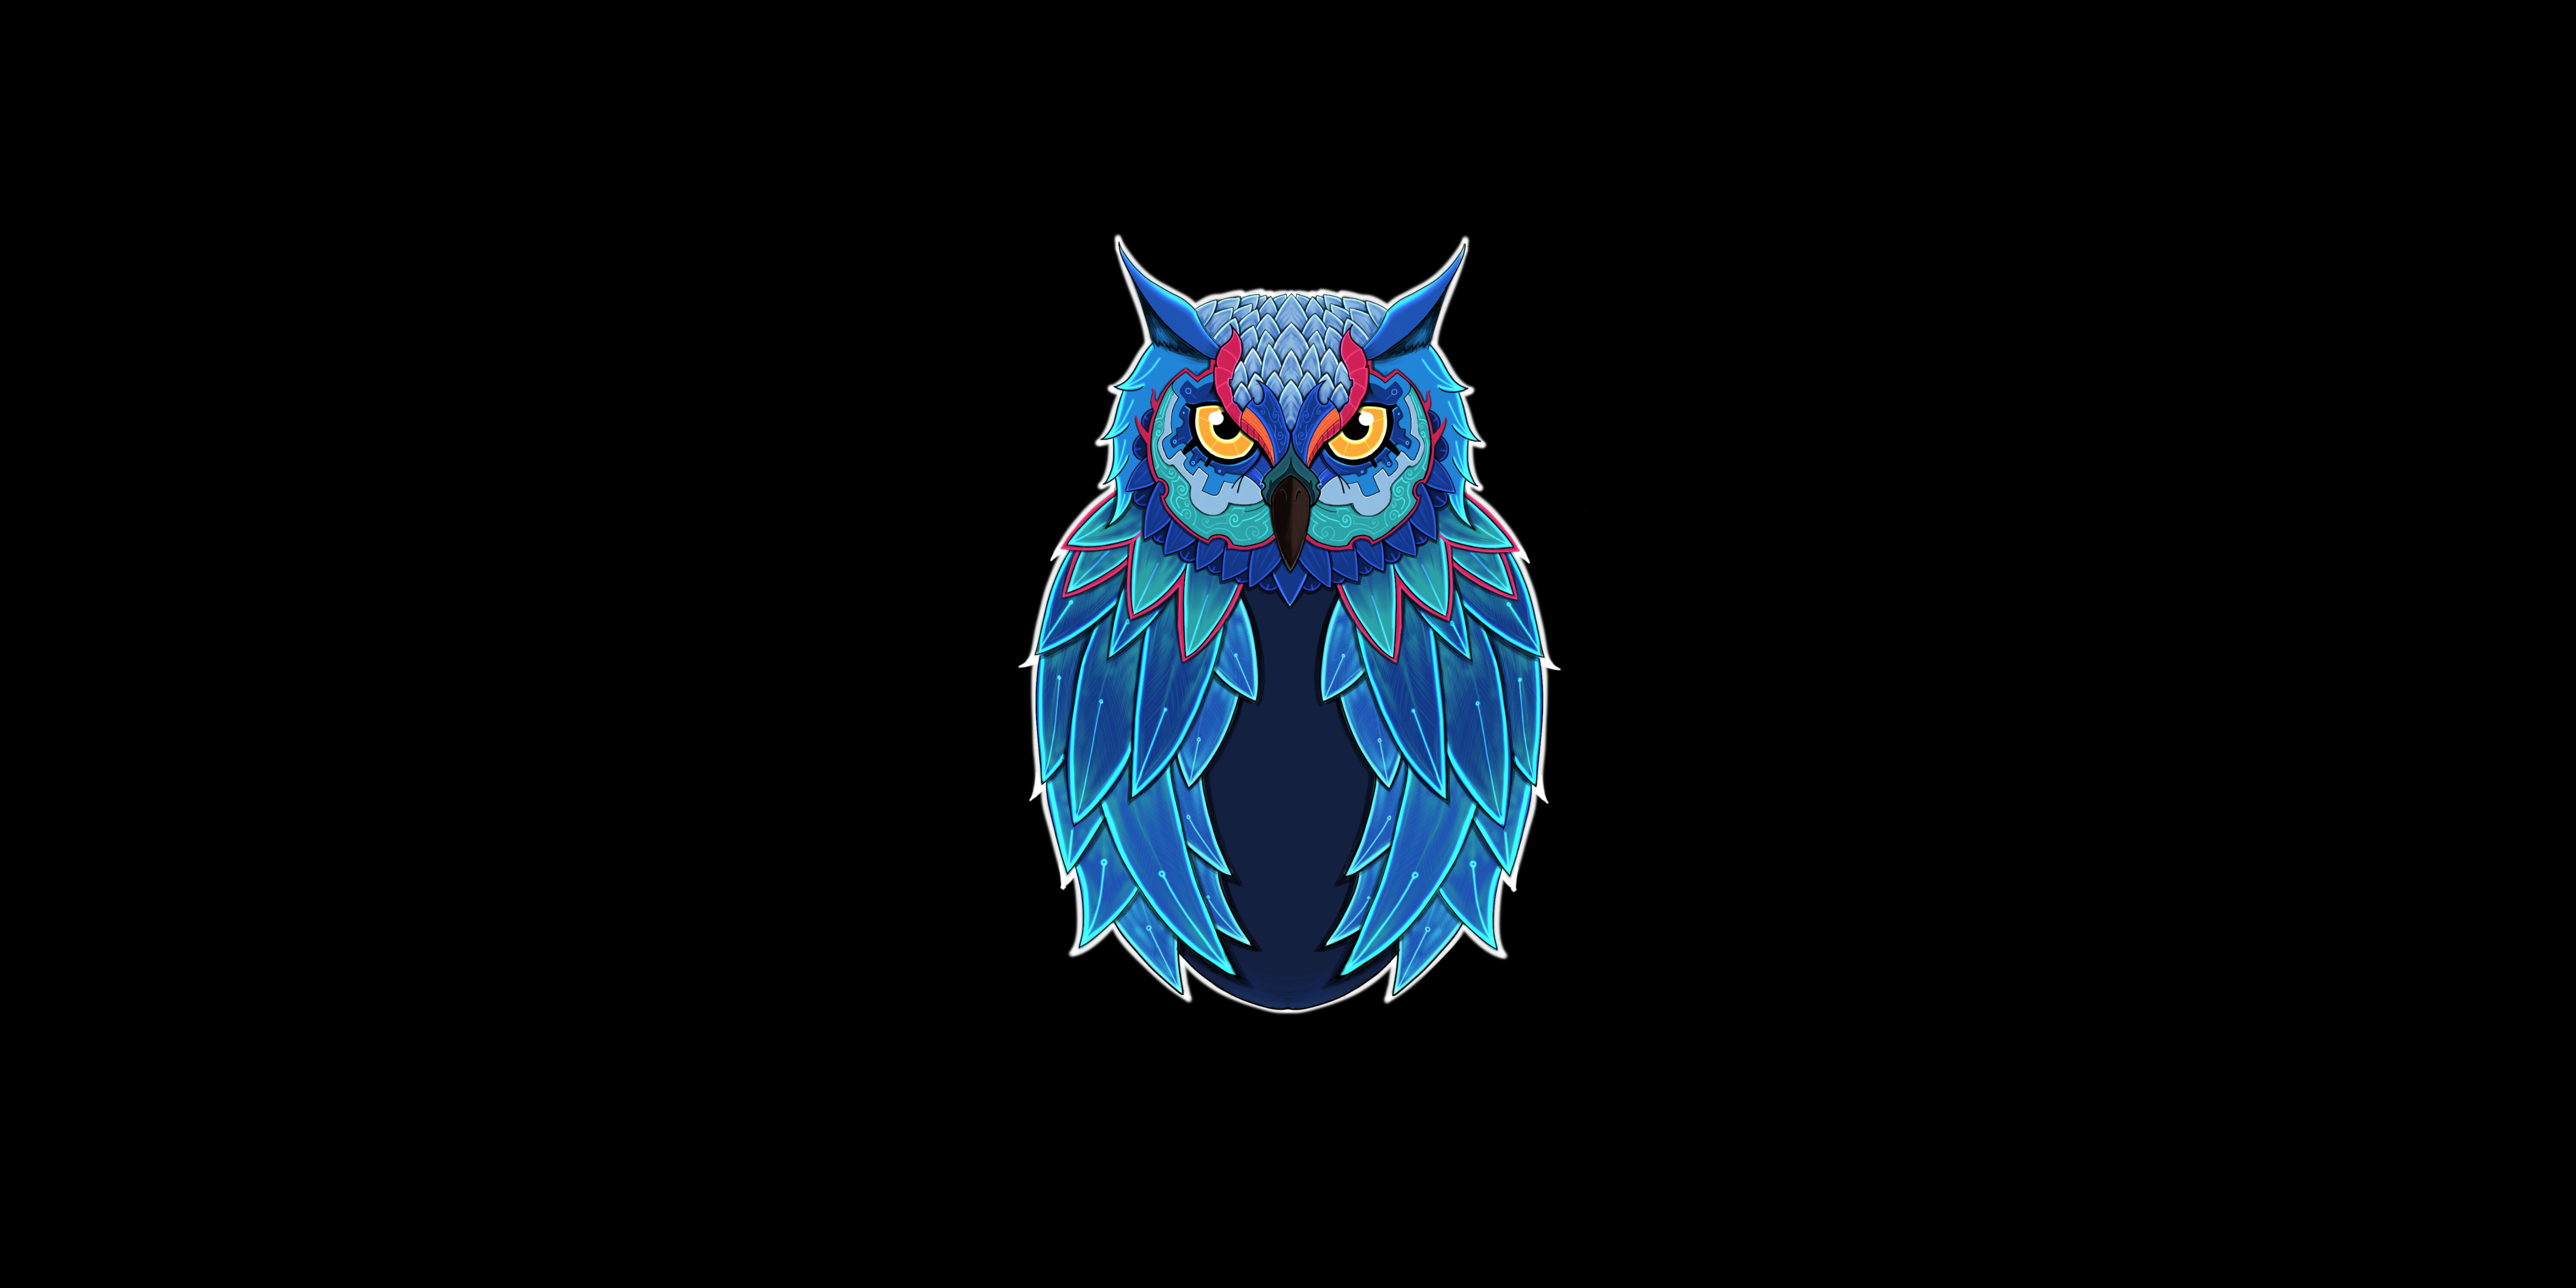 Owl 4k Ultra HD Wallpaper